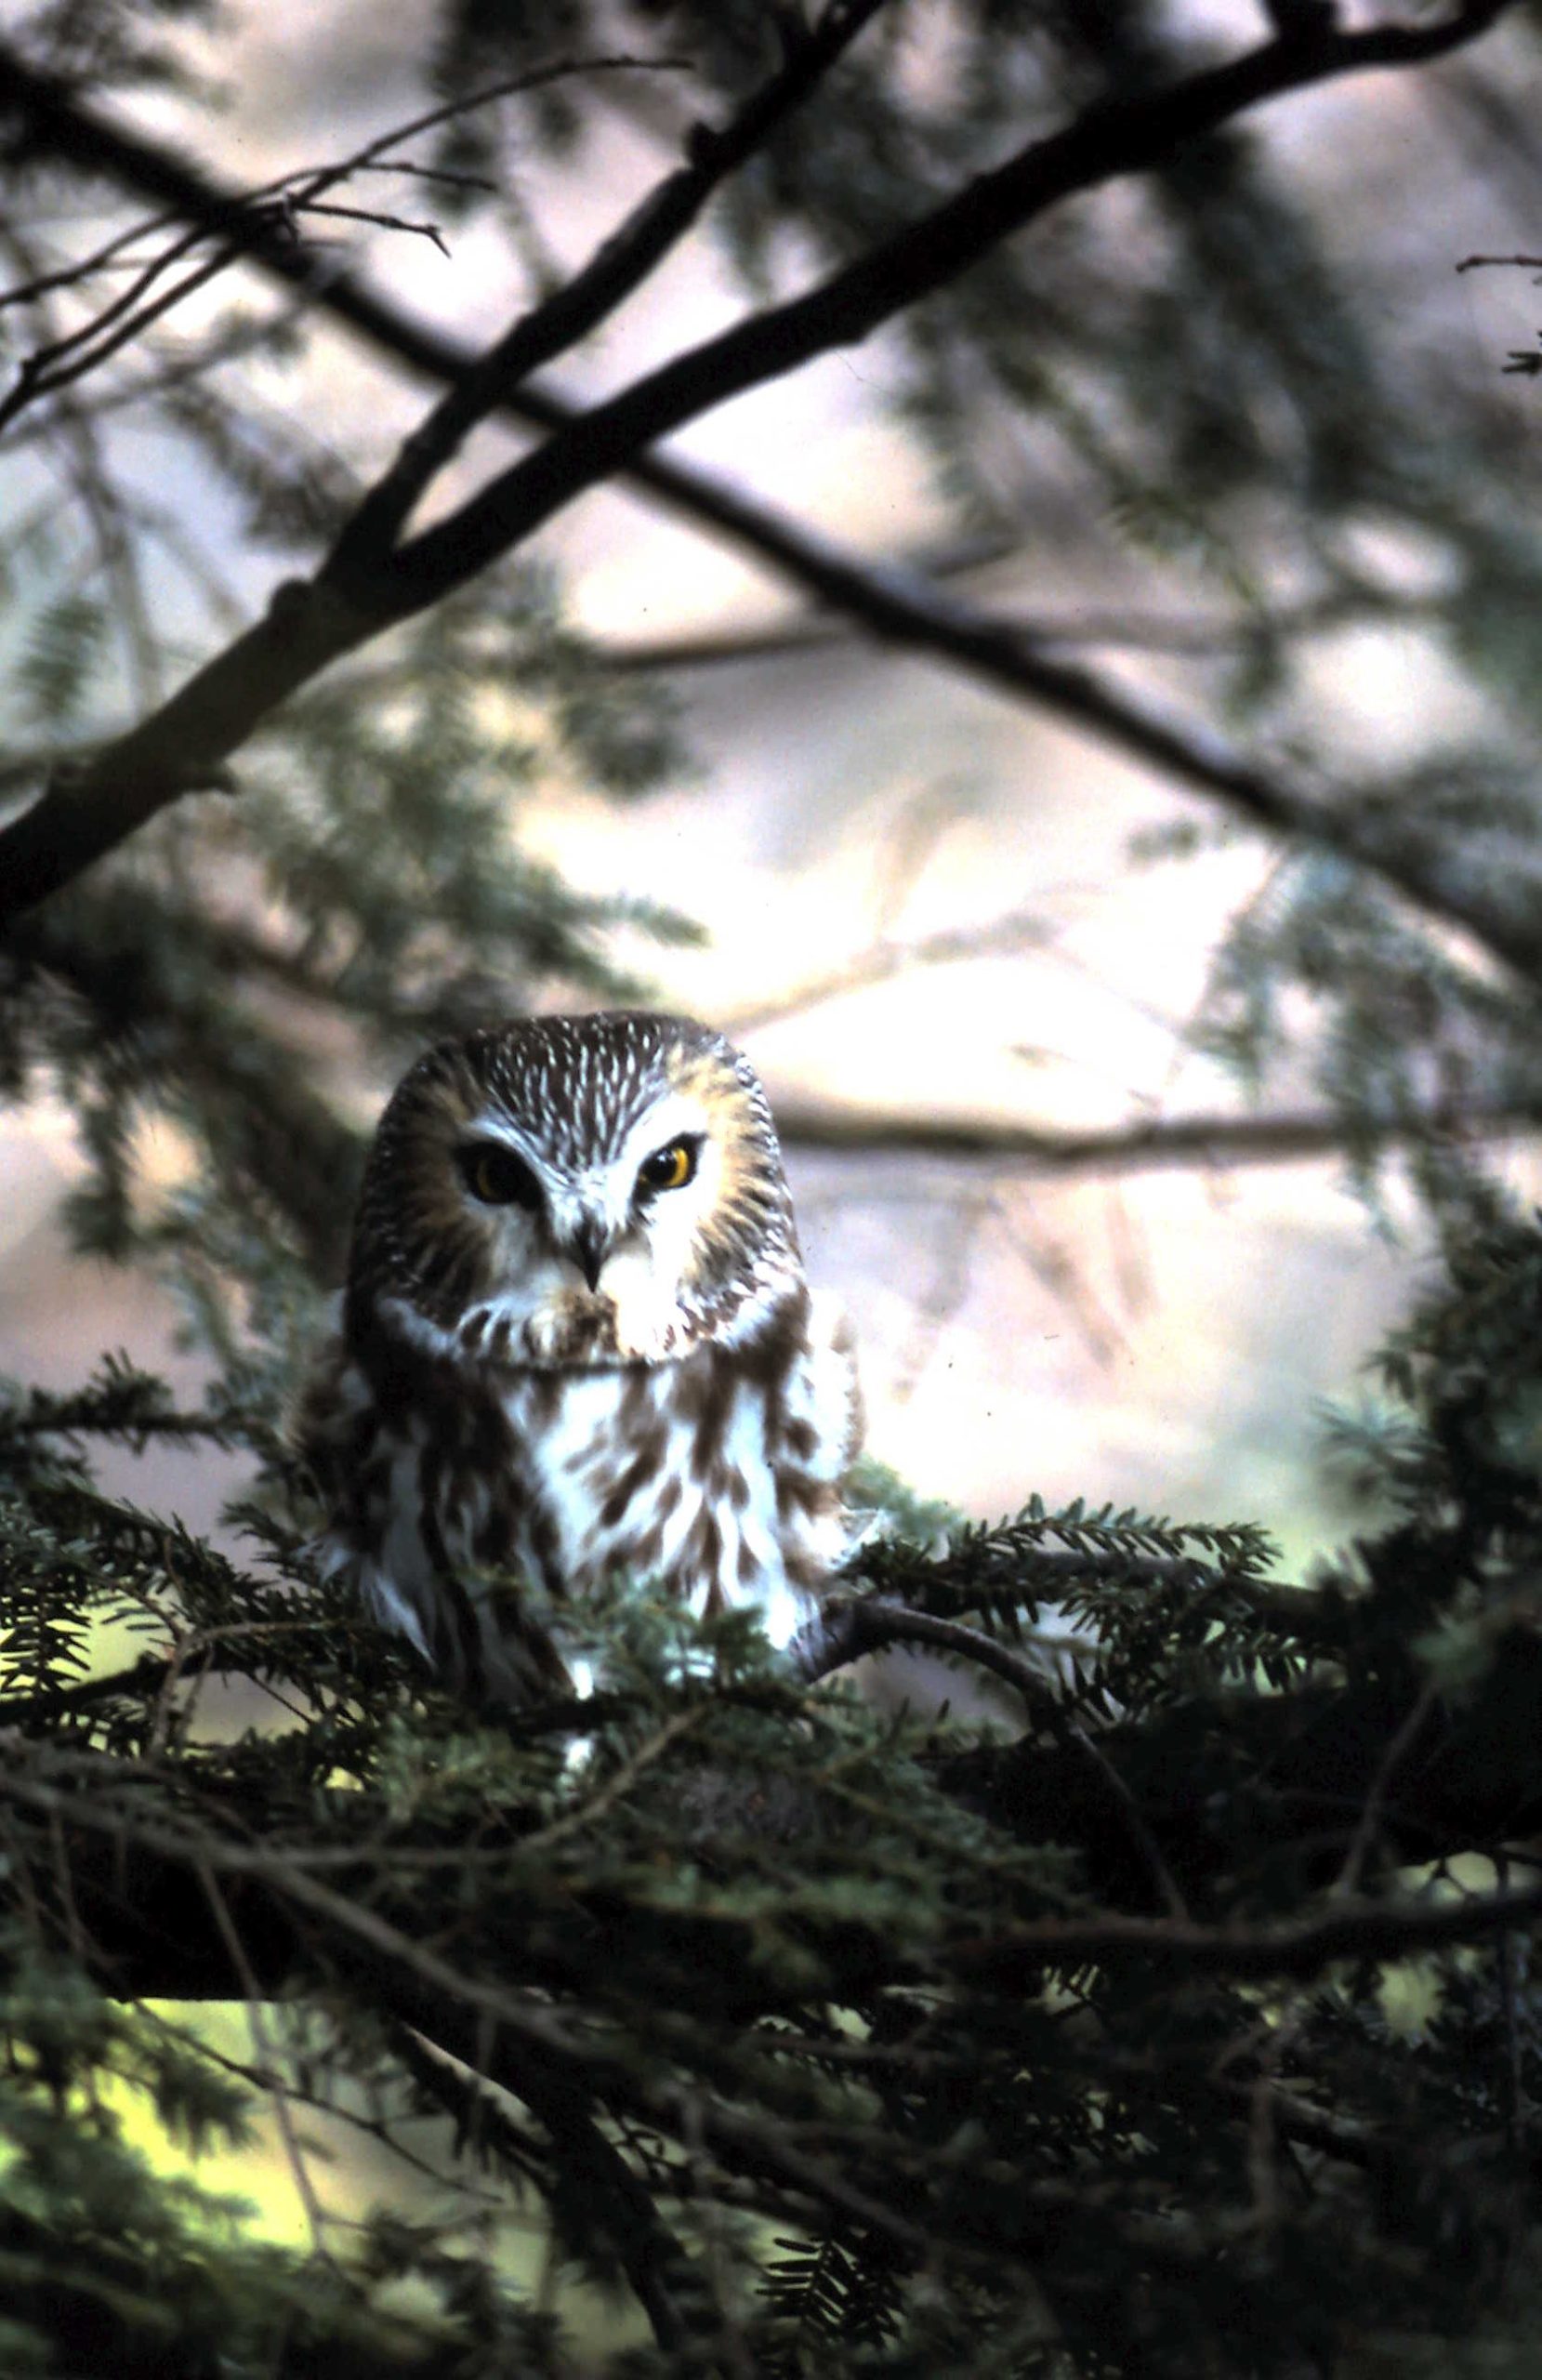 Saw-whet owl in a hemlock tree